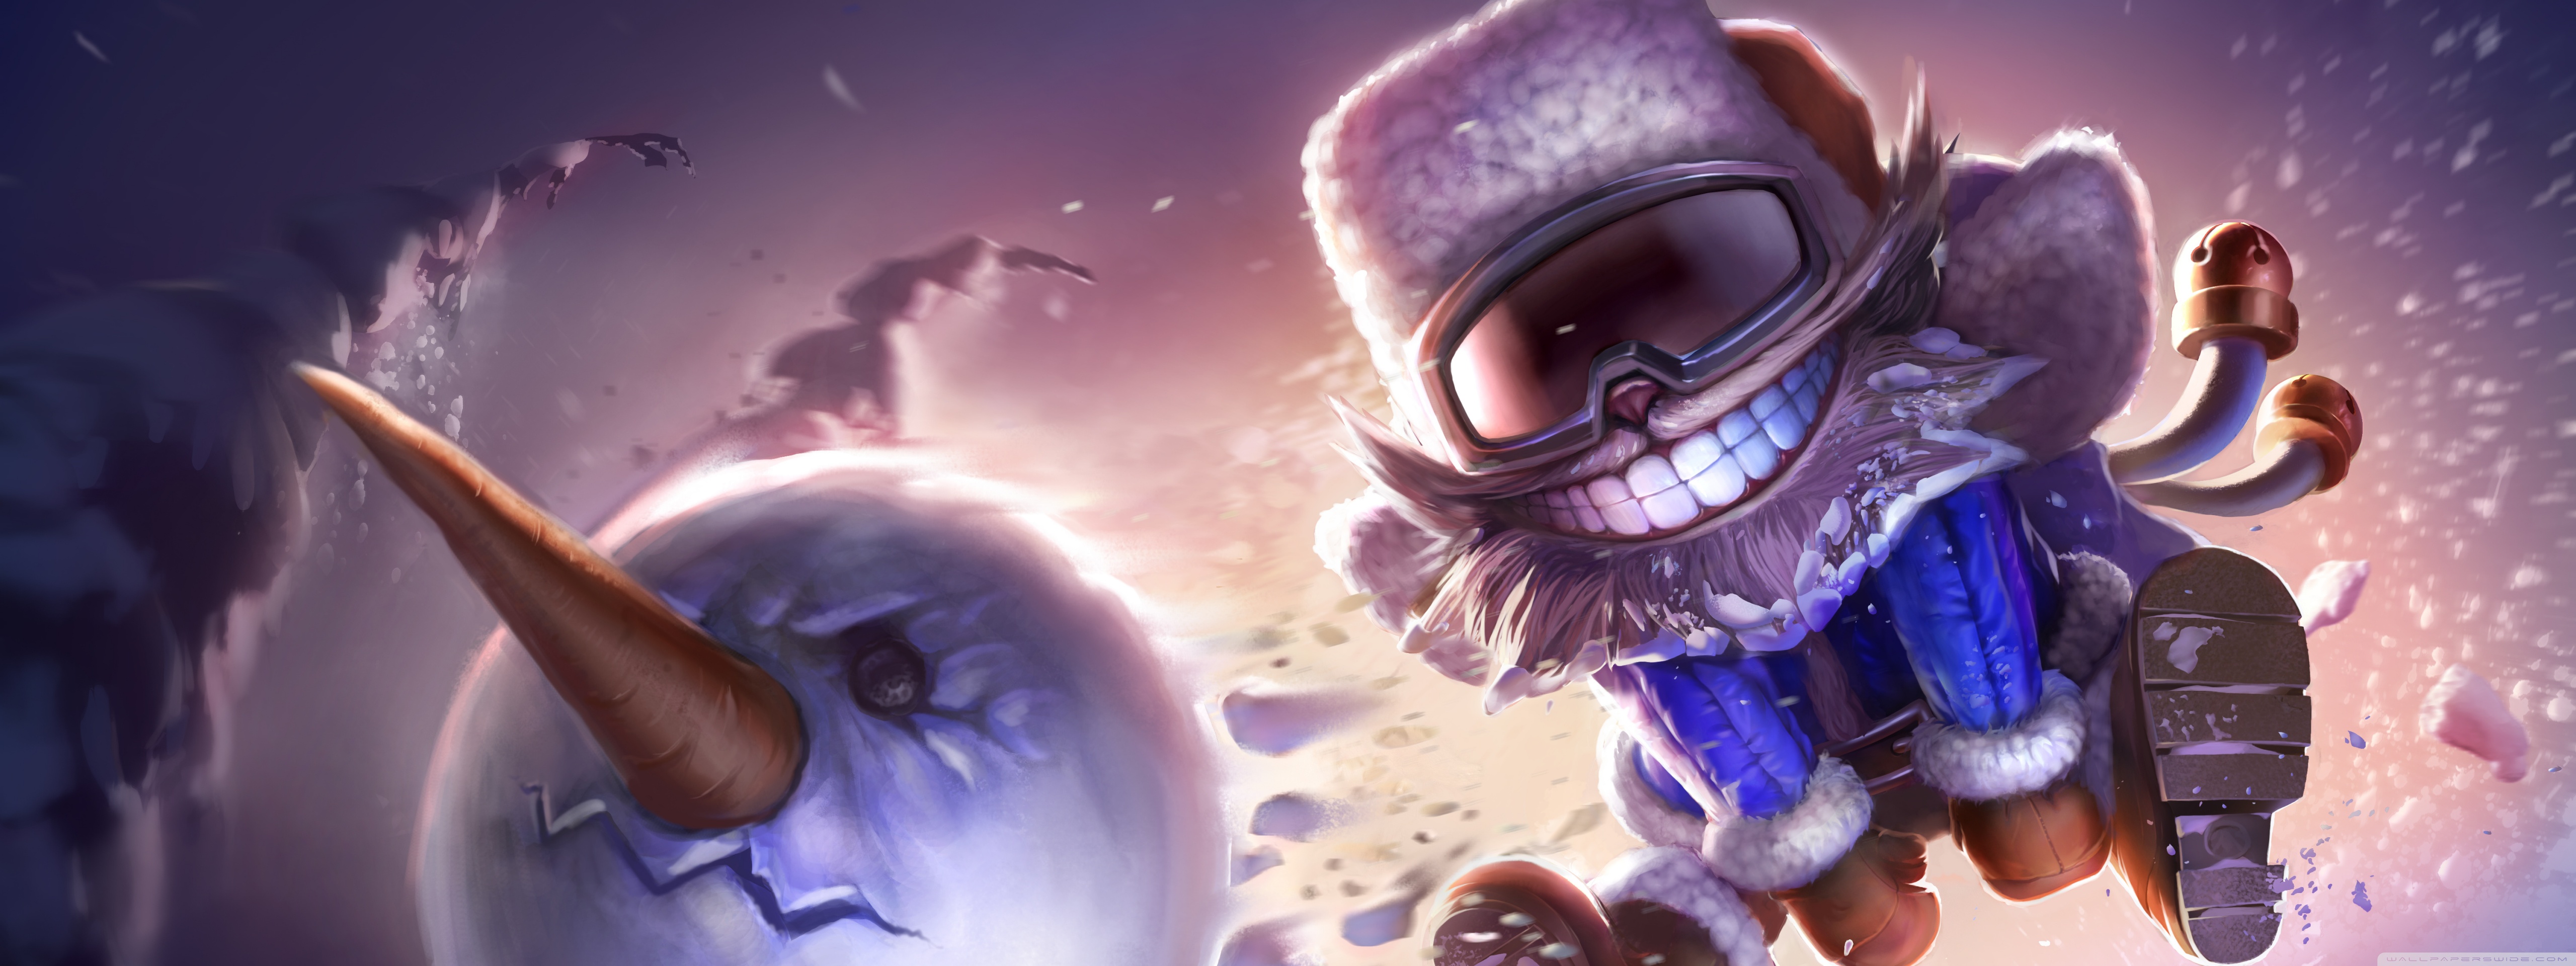 League Of Legends Snowman Concept Art Ultra HD Desktop Background. 